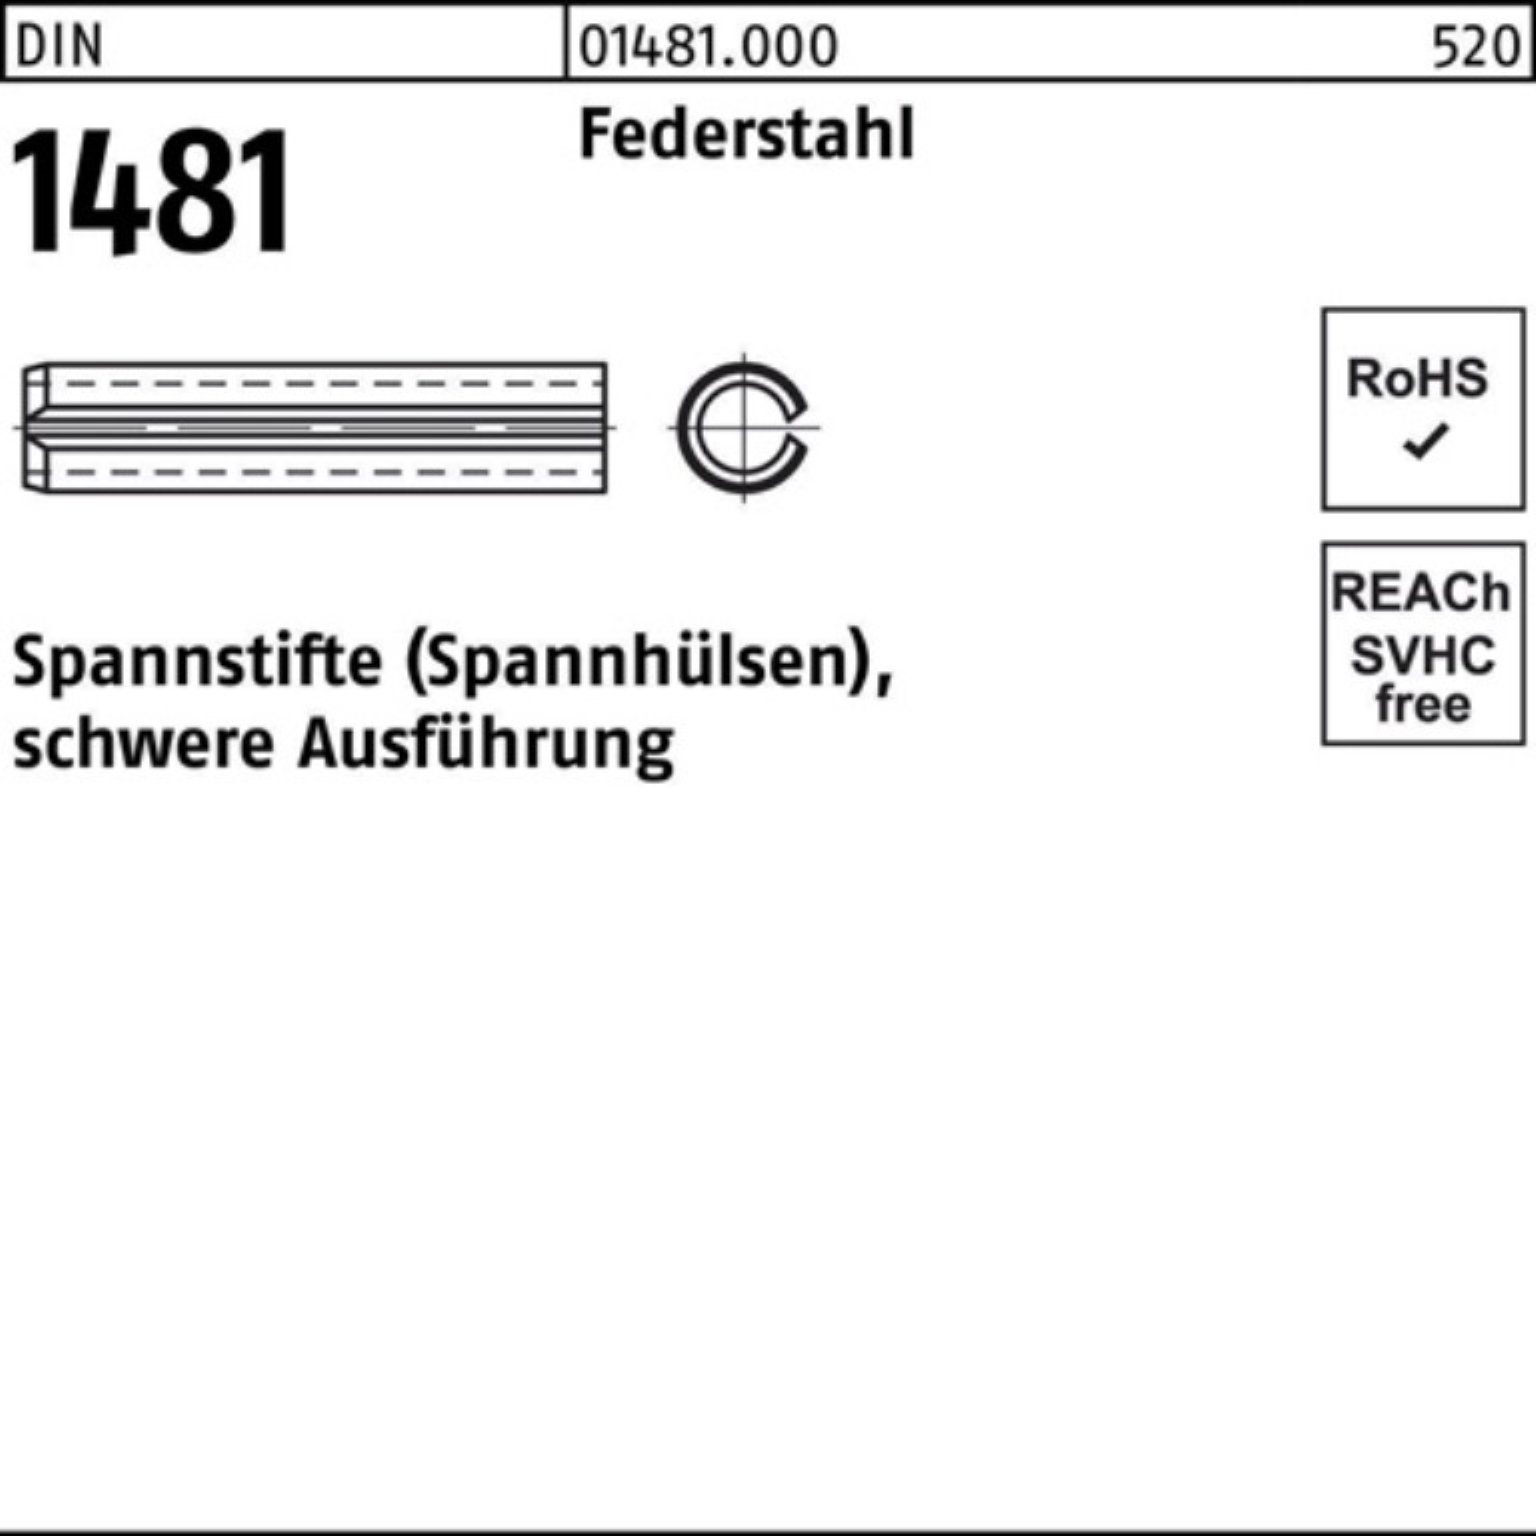 Reyher Spannstift 100er Pack Spannstift DIN 1481 12x 100 Federstahl schwere Ausführung